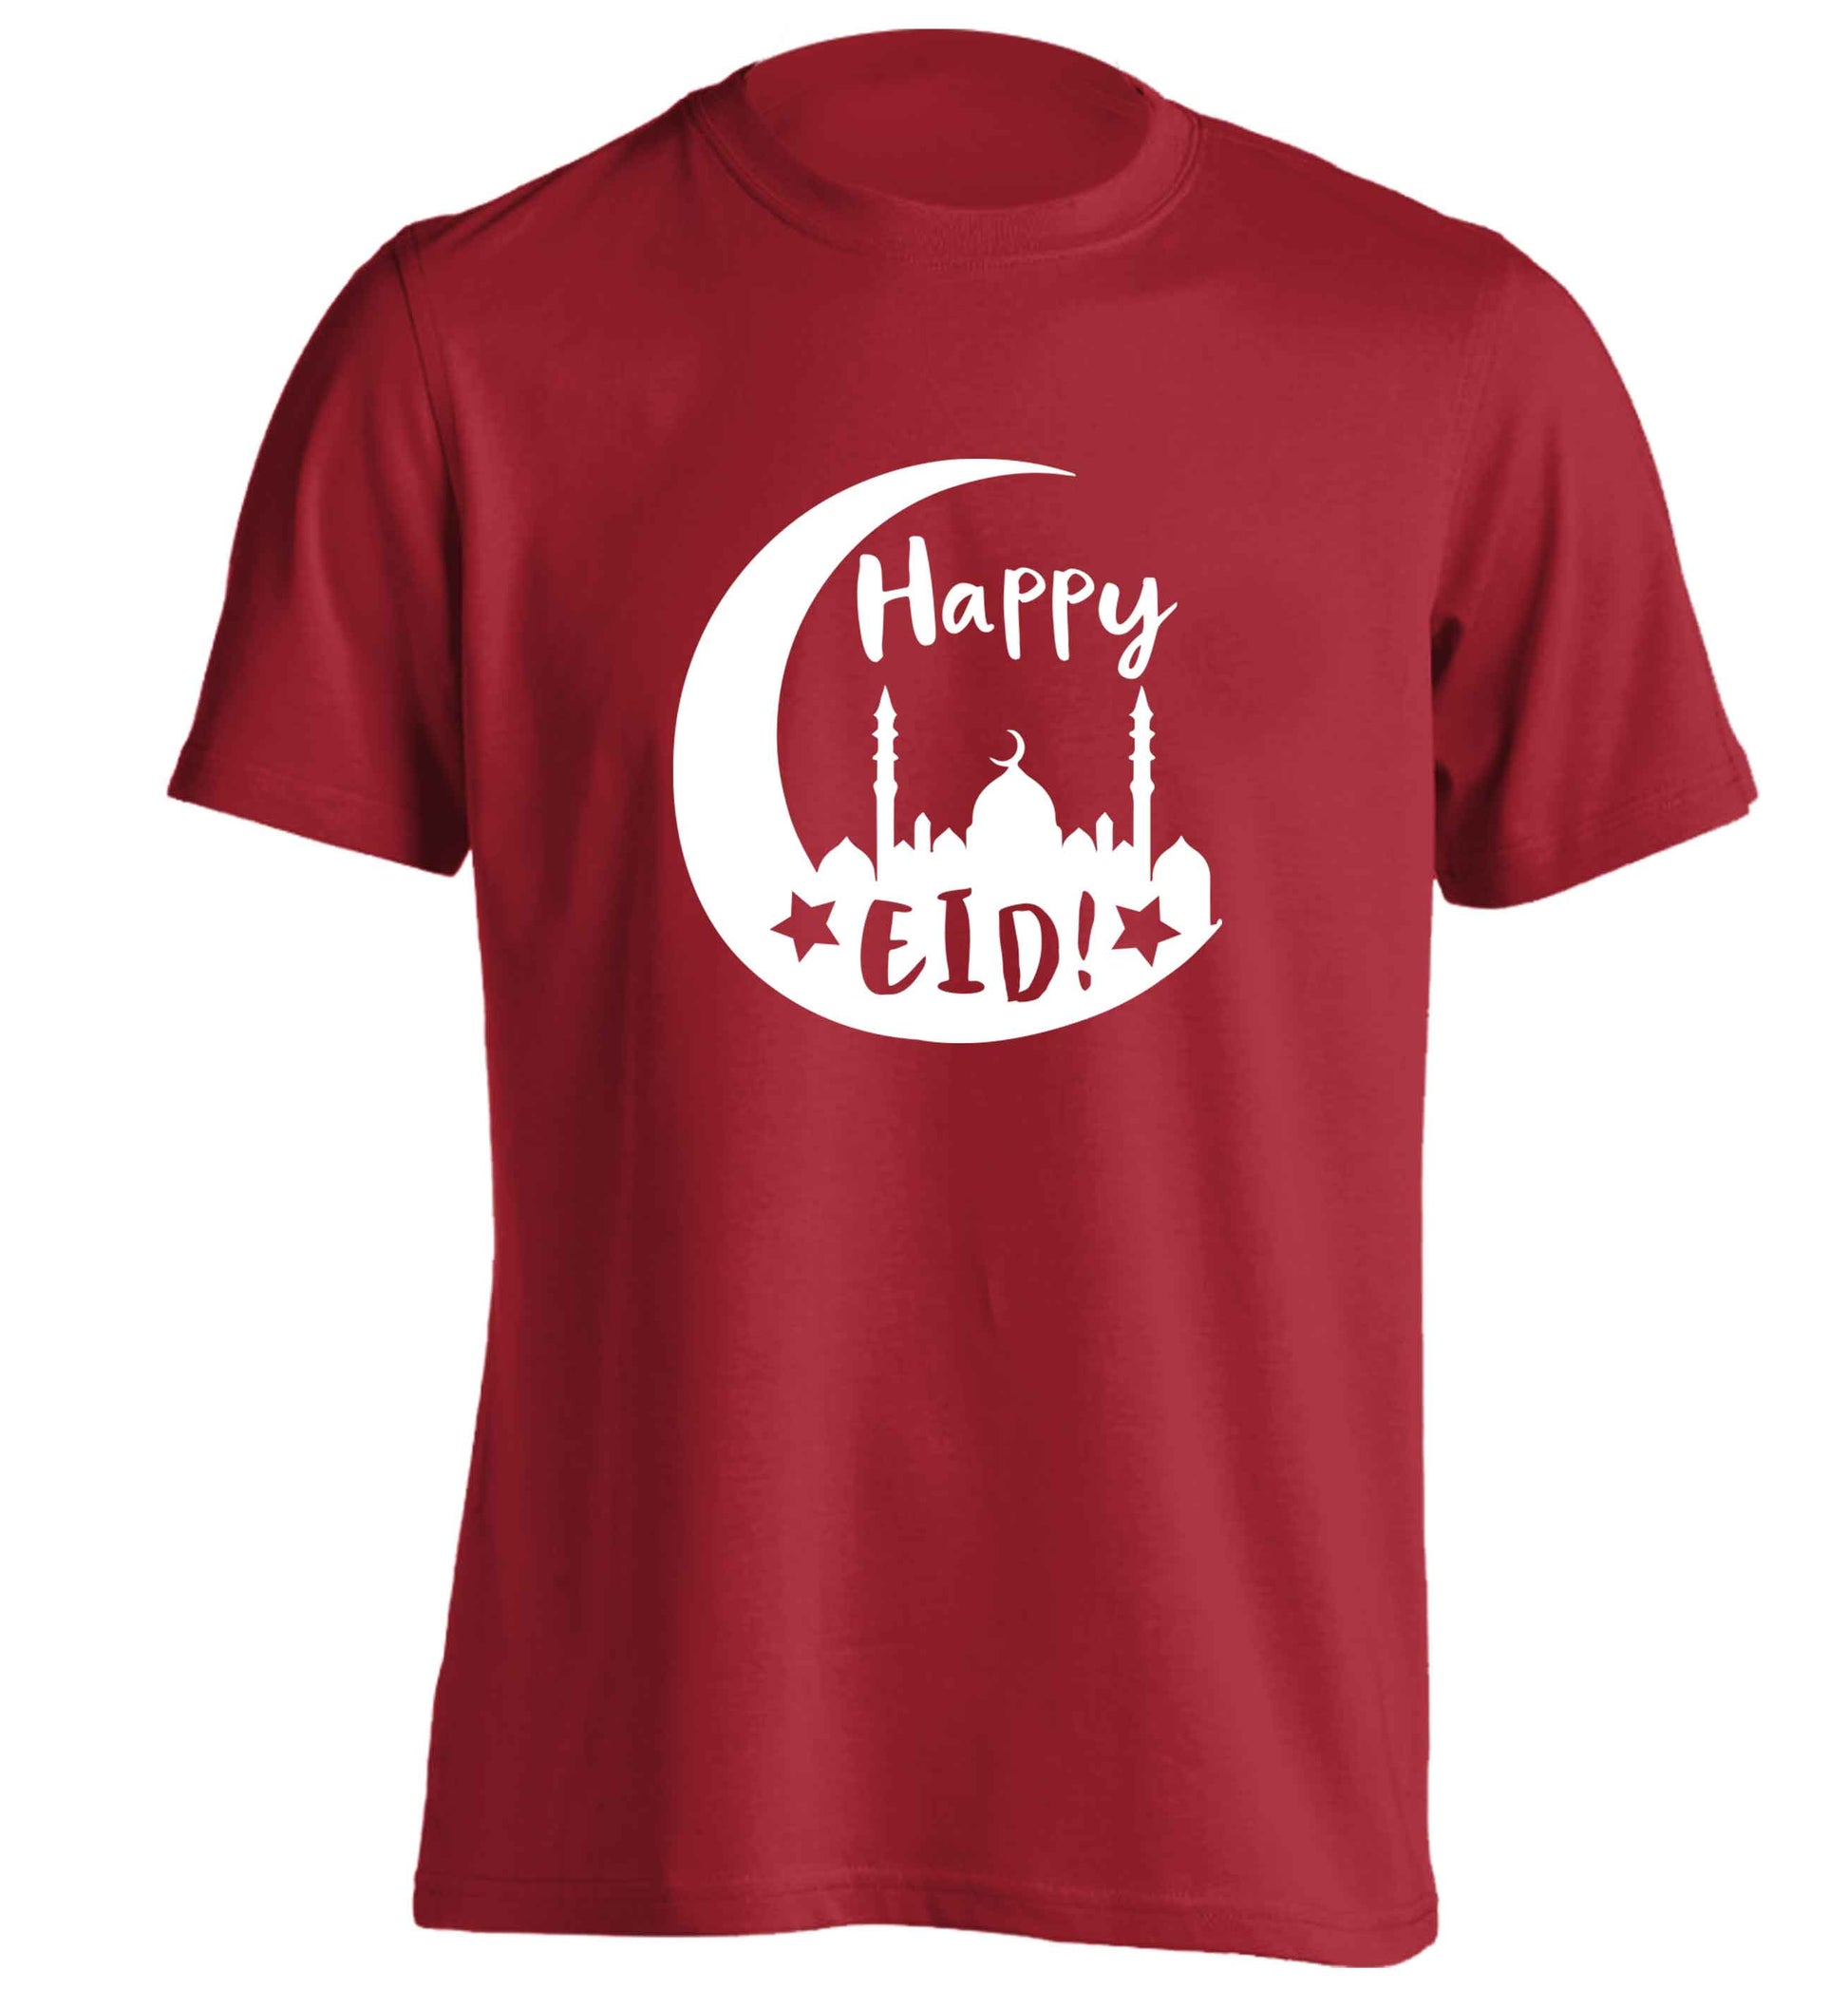 Happy Eid adults unisex red Tshirt 2XL